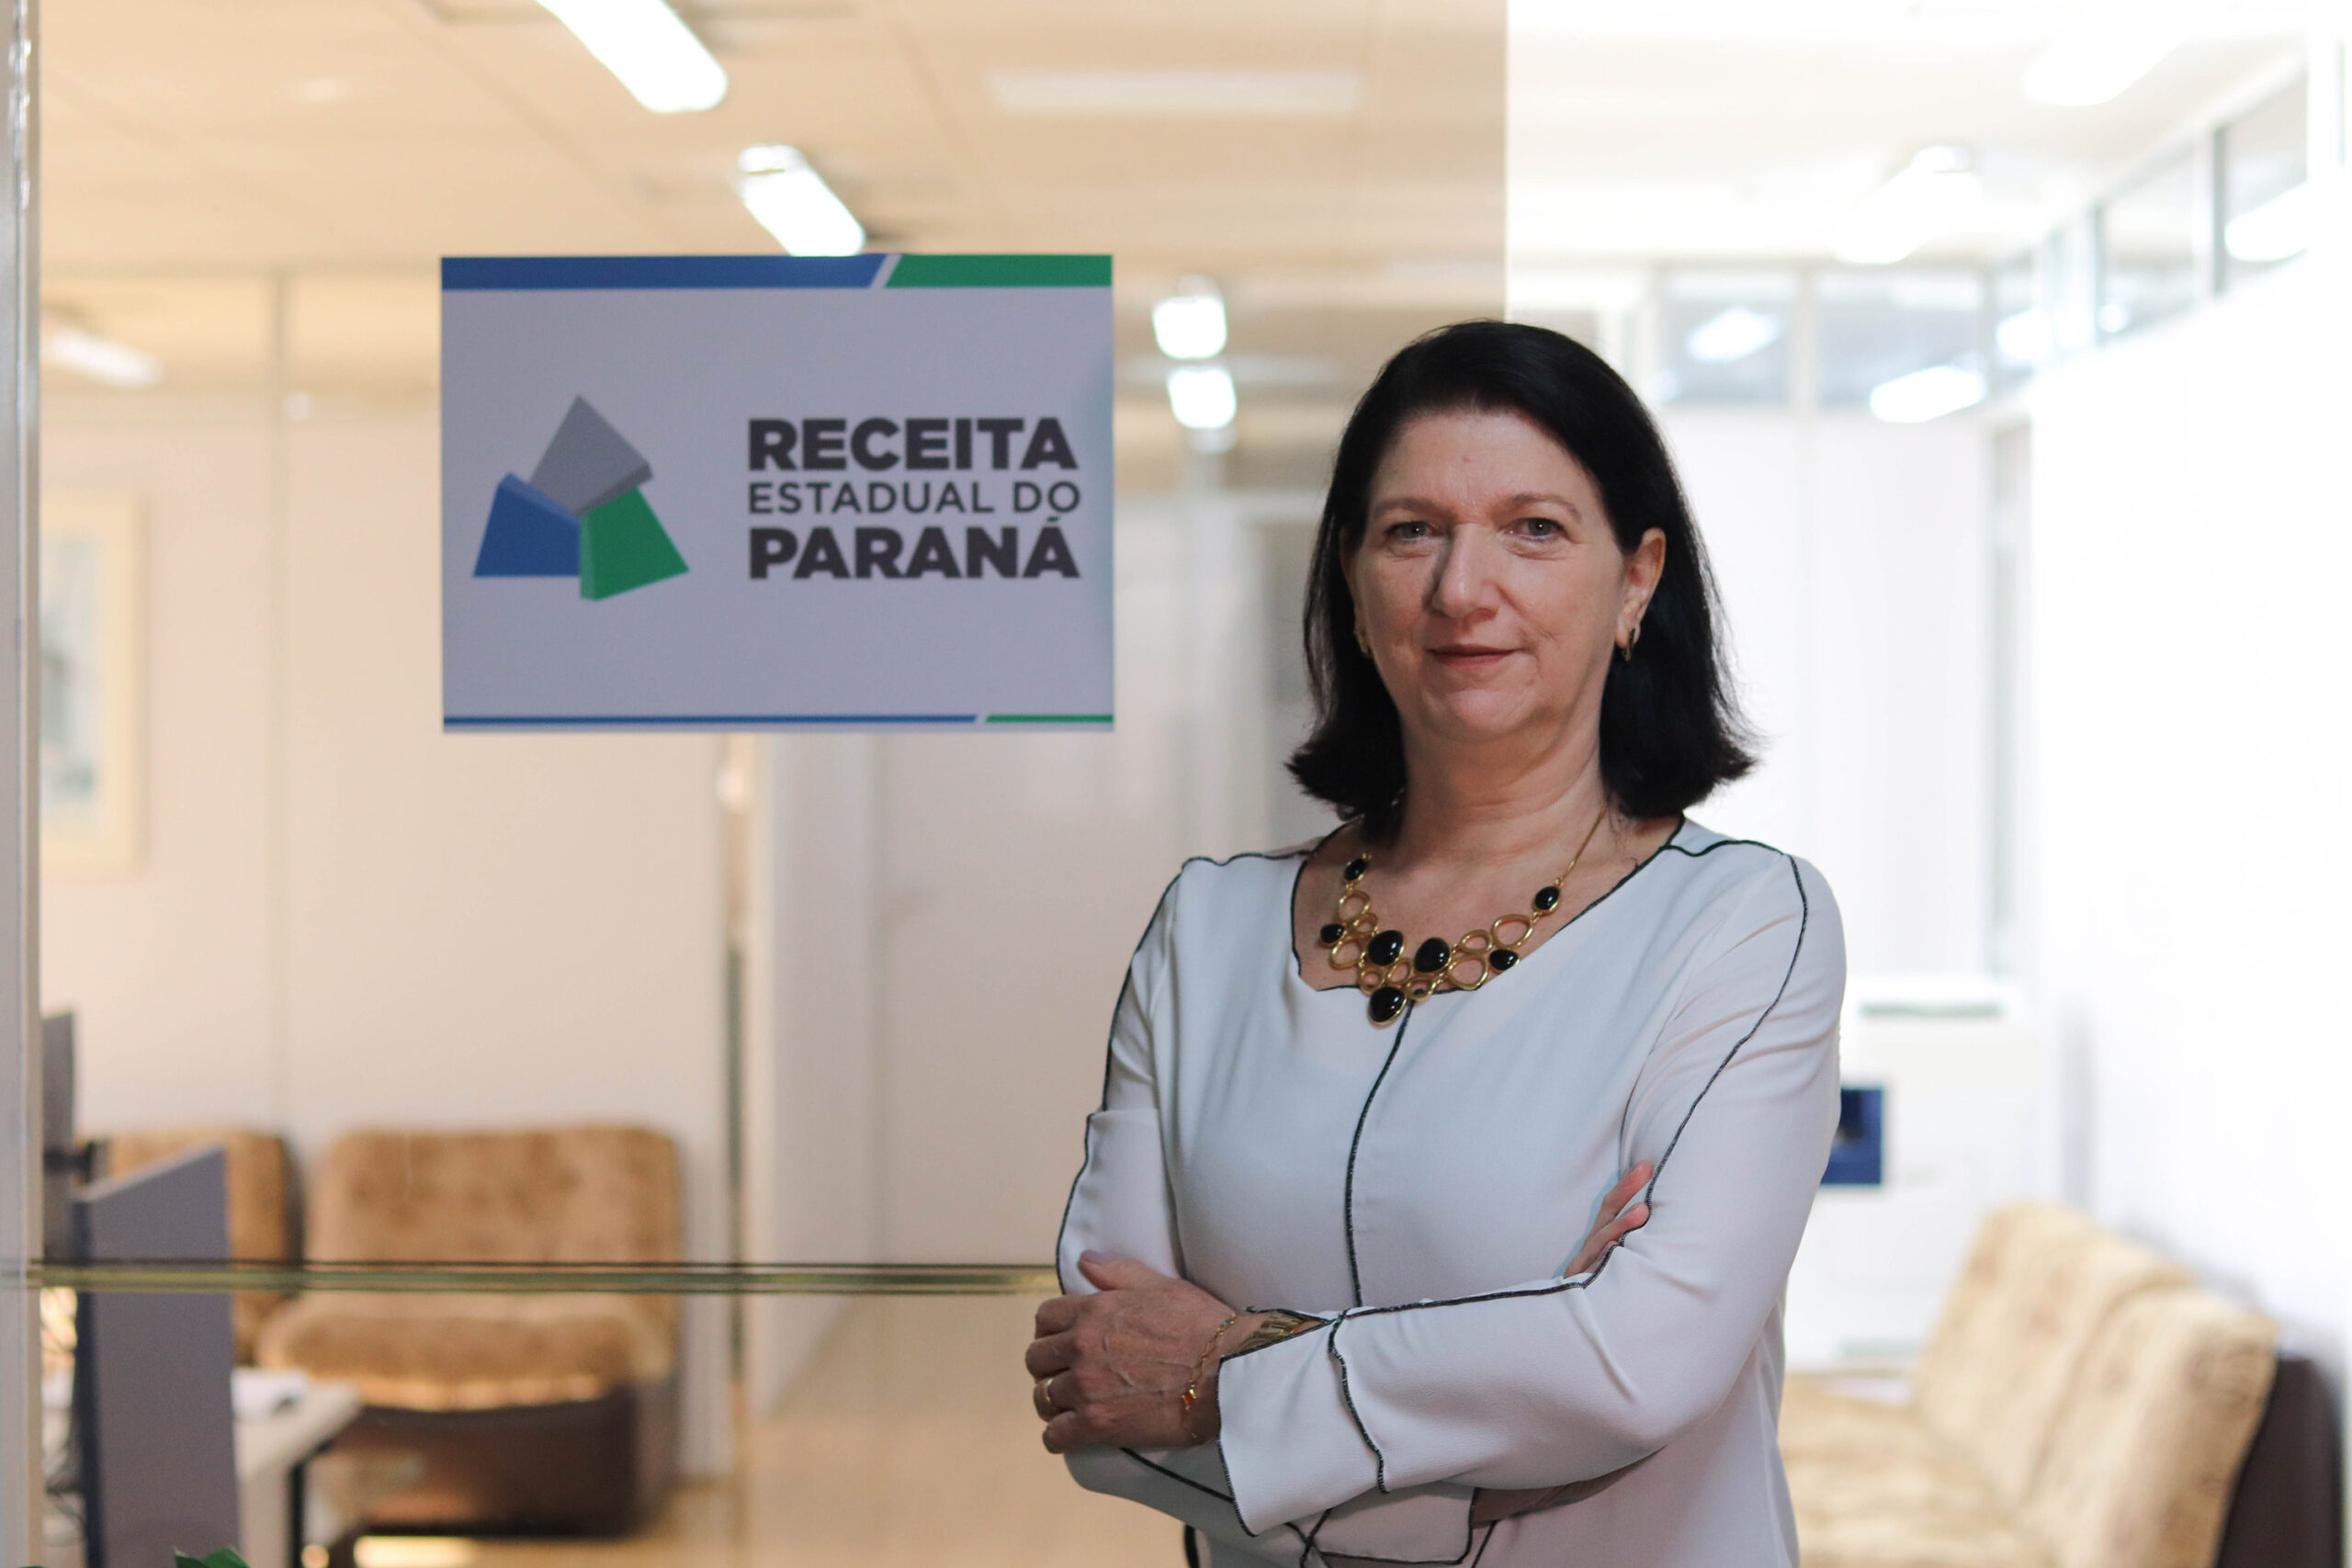 Jornal Ilustrado - Receita Estadual do Paraná terá mulher no comando pela 1ª vez em 170 anos